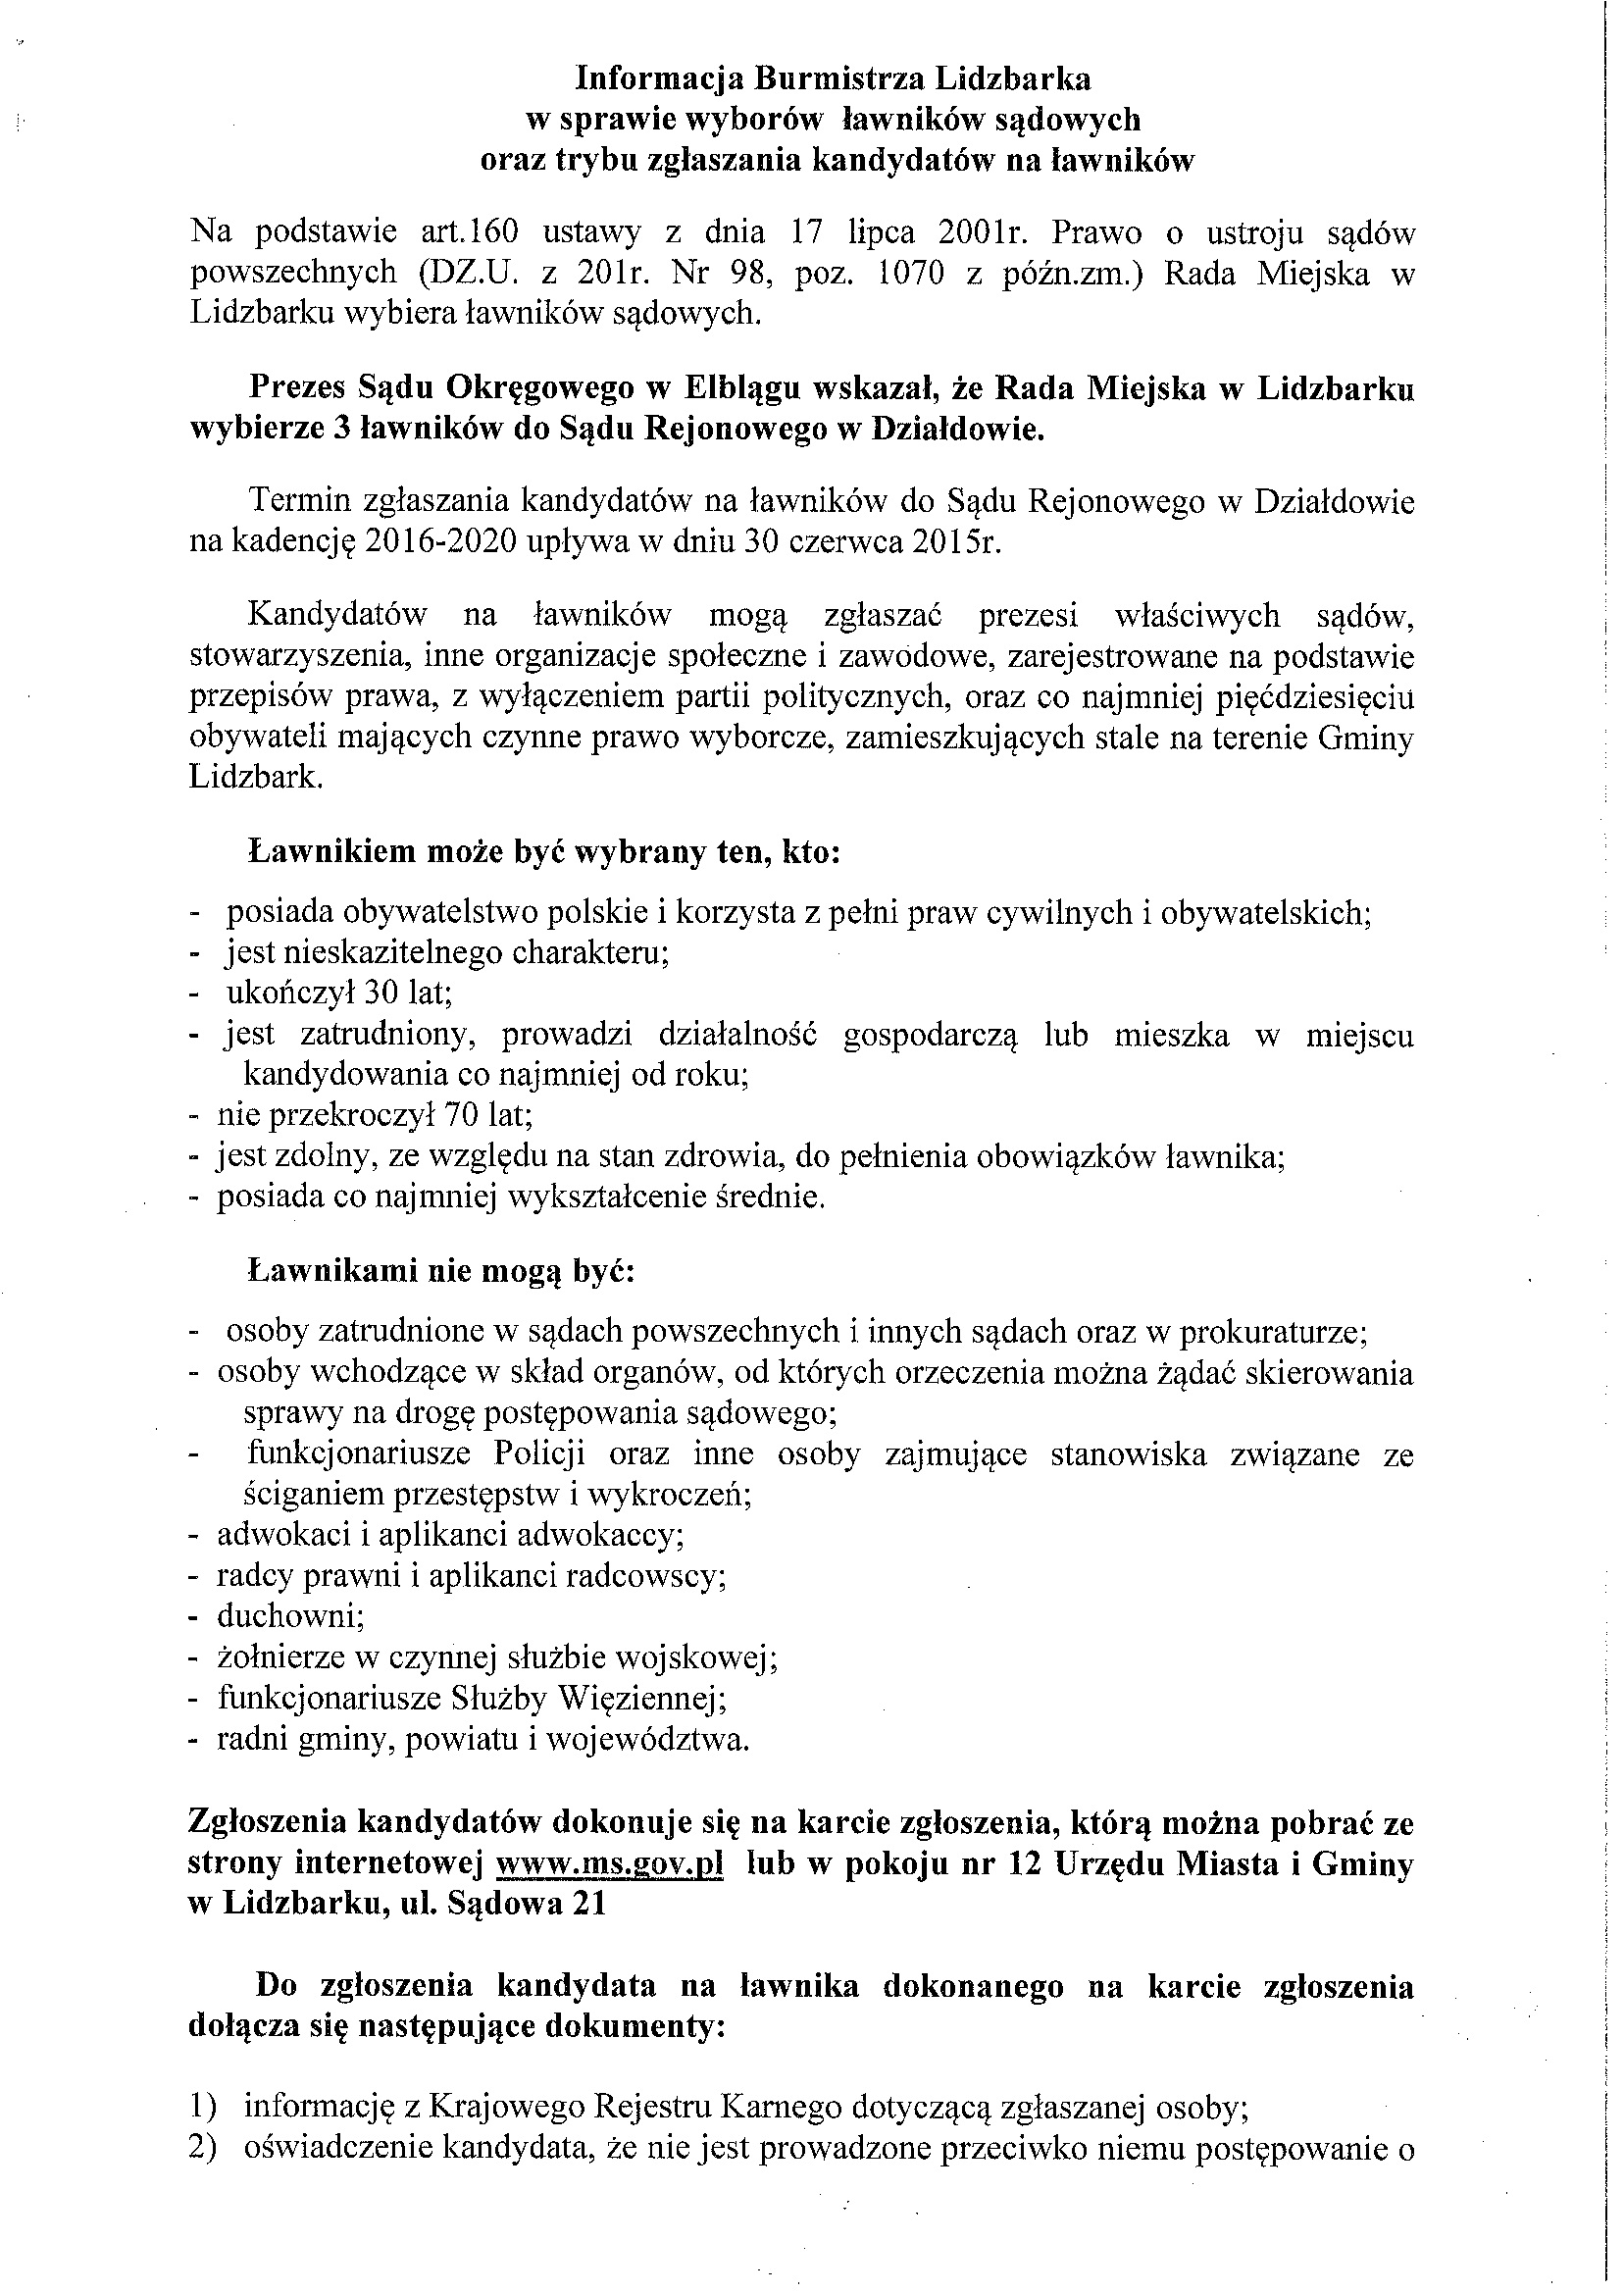 Informacja Burmistrza Lidzbarka w sprawie wyborów ławników sądowych oraz trybu zgłaszana kandydatów na ławników